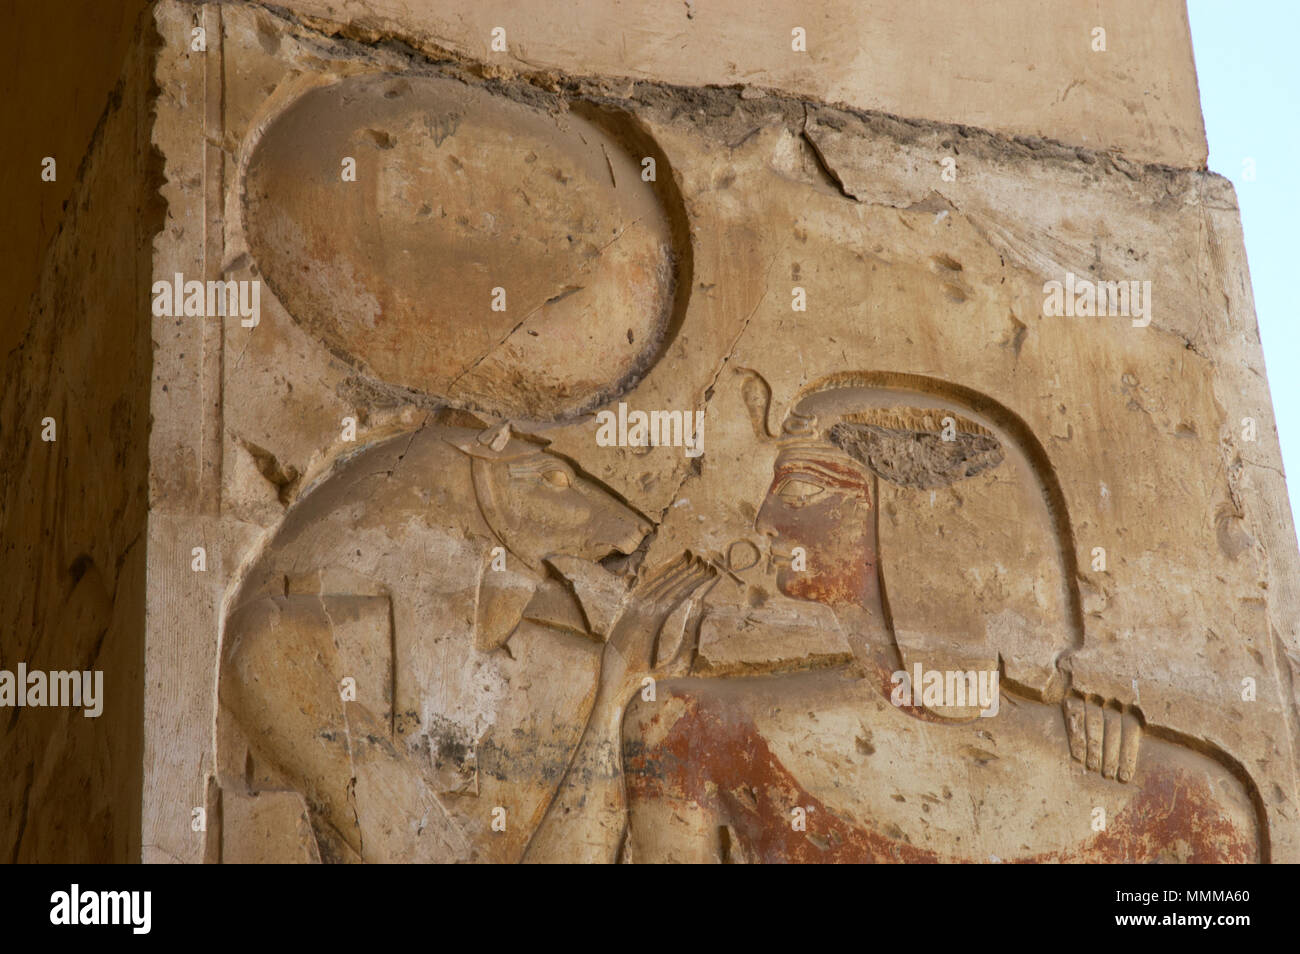 L'Égypte. Abydos. Temple de Seti I. nouveau royaume. 19e dynastie. Le Pharaon recevant l'ankh (symbole de vie) à partir de la déesse Sekhmet, décrite comme une lionne. Soulagement, polychrome d'origine. Banque D'Images